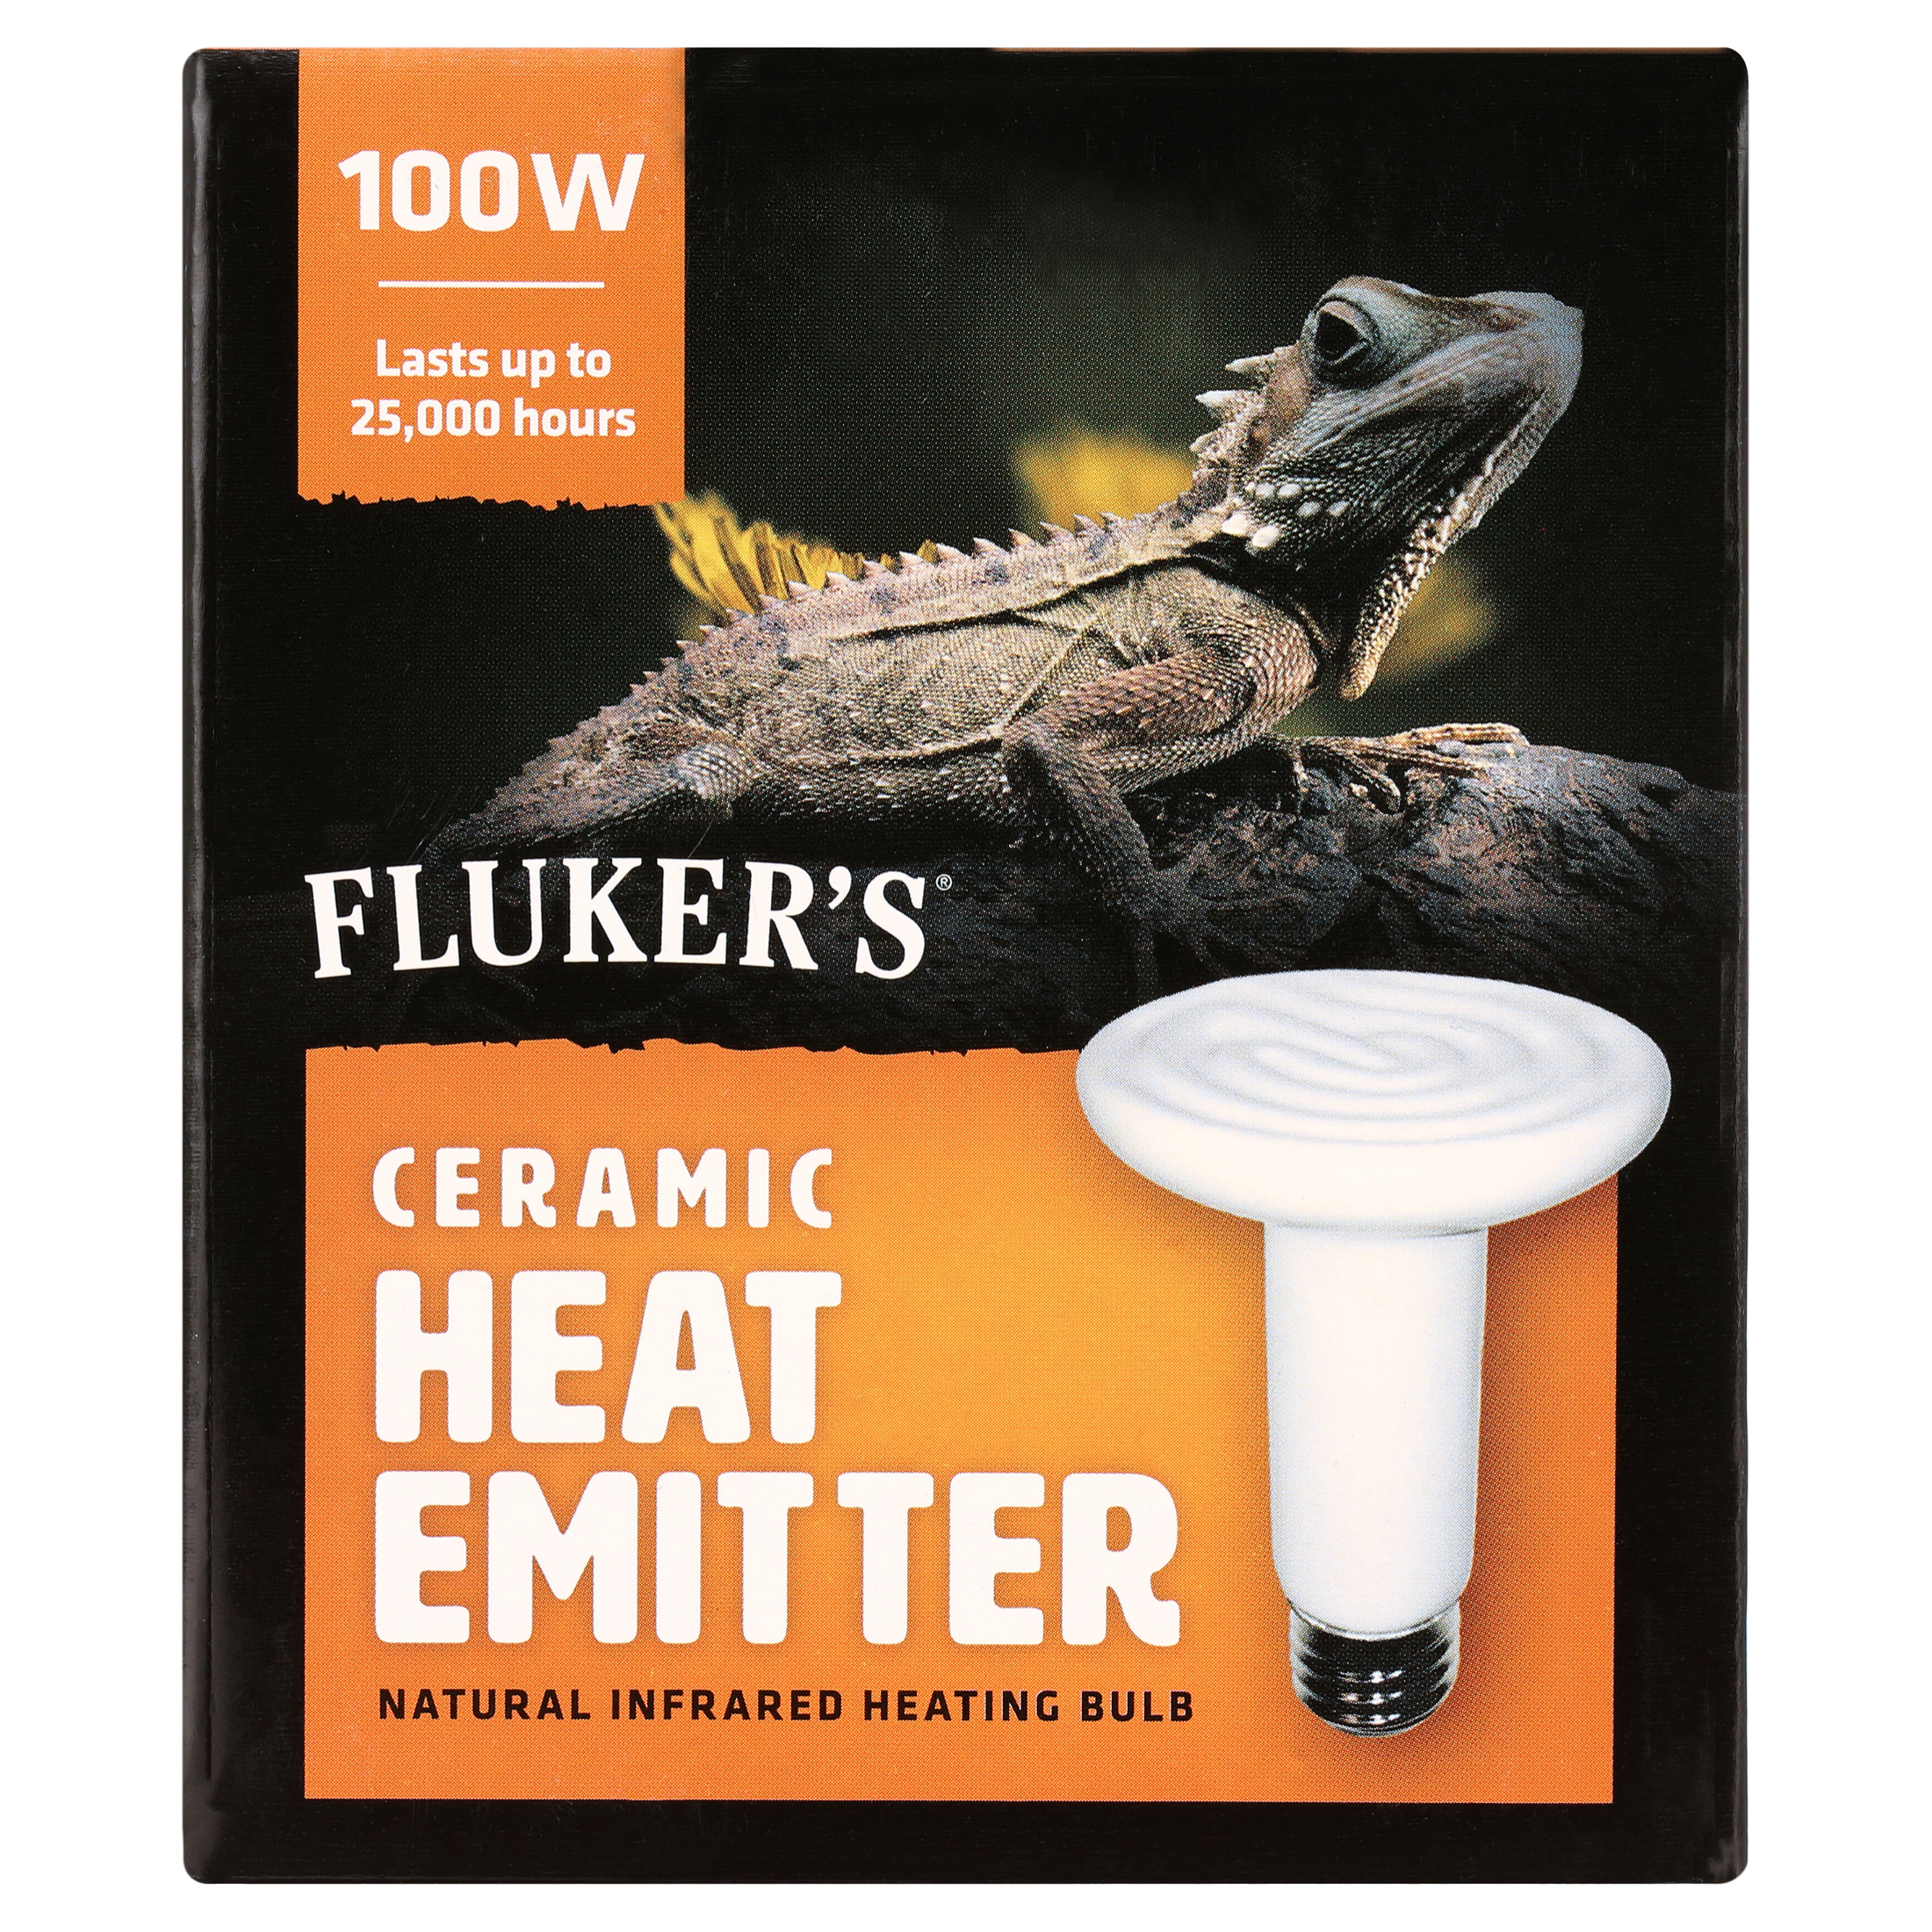 Ceramic Heat Emitter 100 watt - image 2 of 5